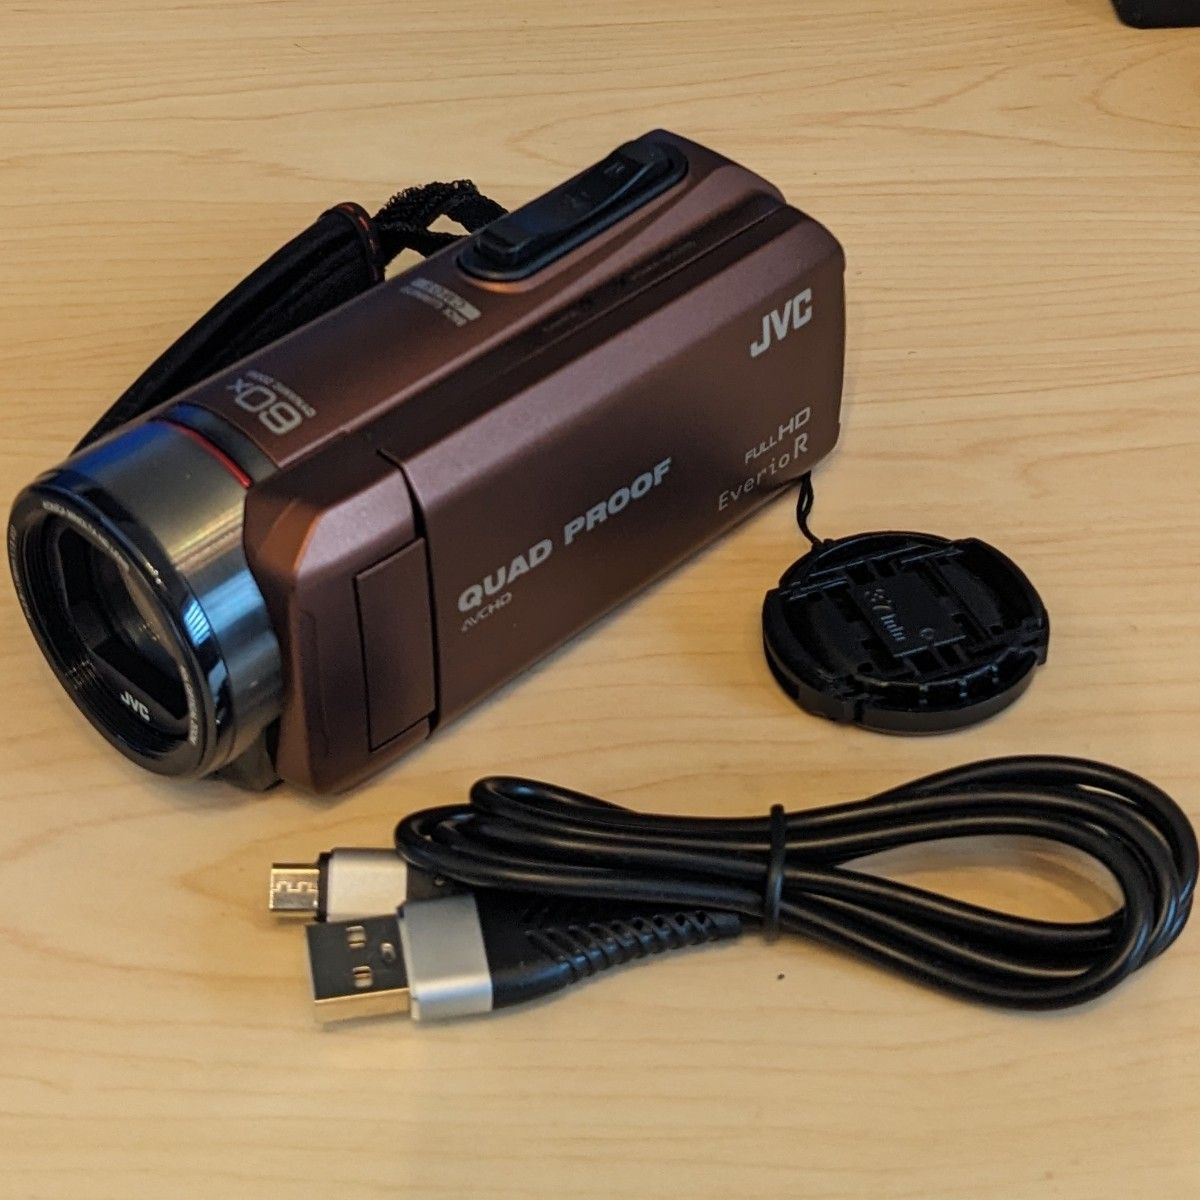 JVC ビデオカメラ Everio R GZ-R400 ブラウン